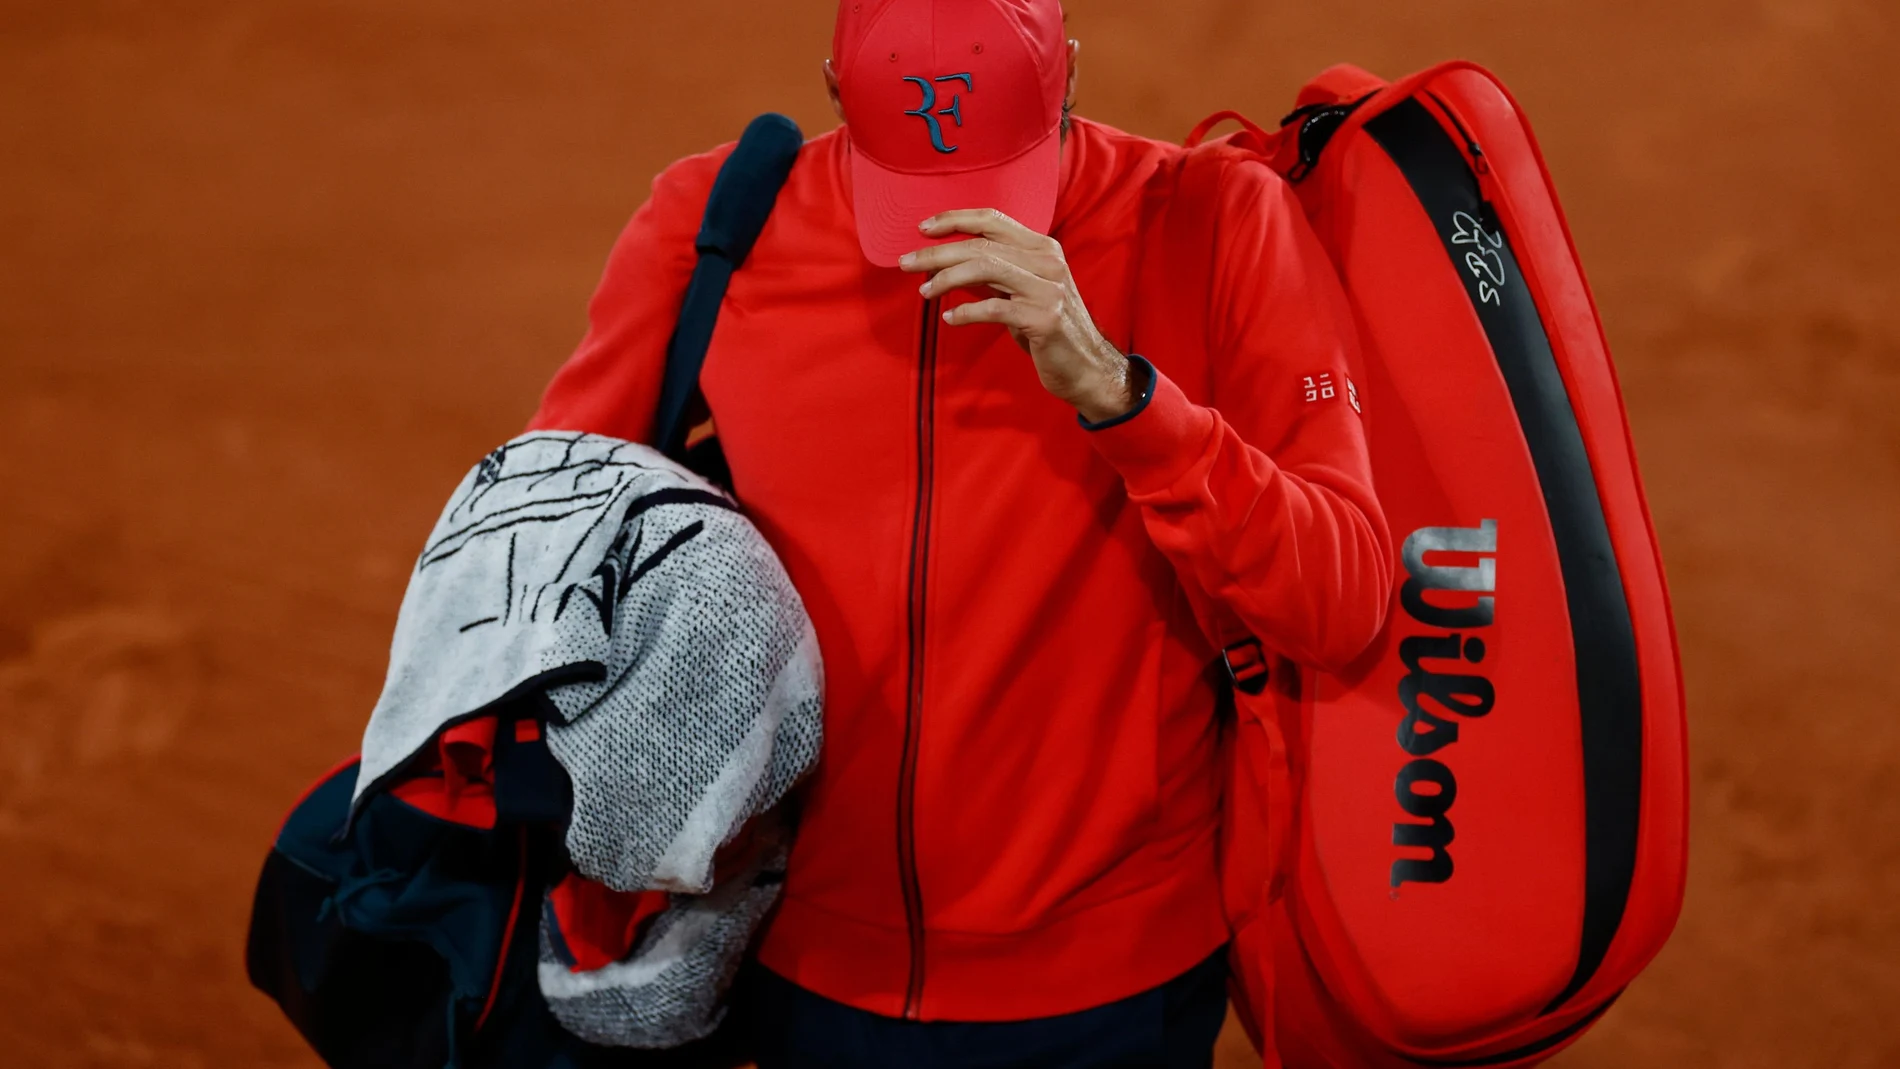 Roger Federer dice adiós a Roland Garros pese a su clasificación para octavos. No quiere forzar su cuerpo pensando en la hierba